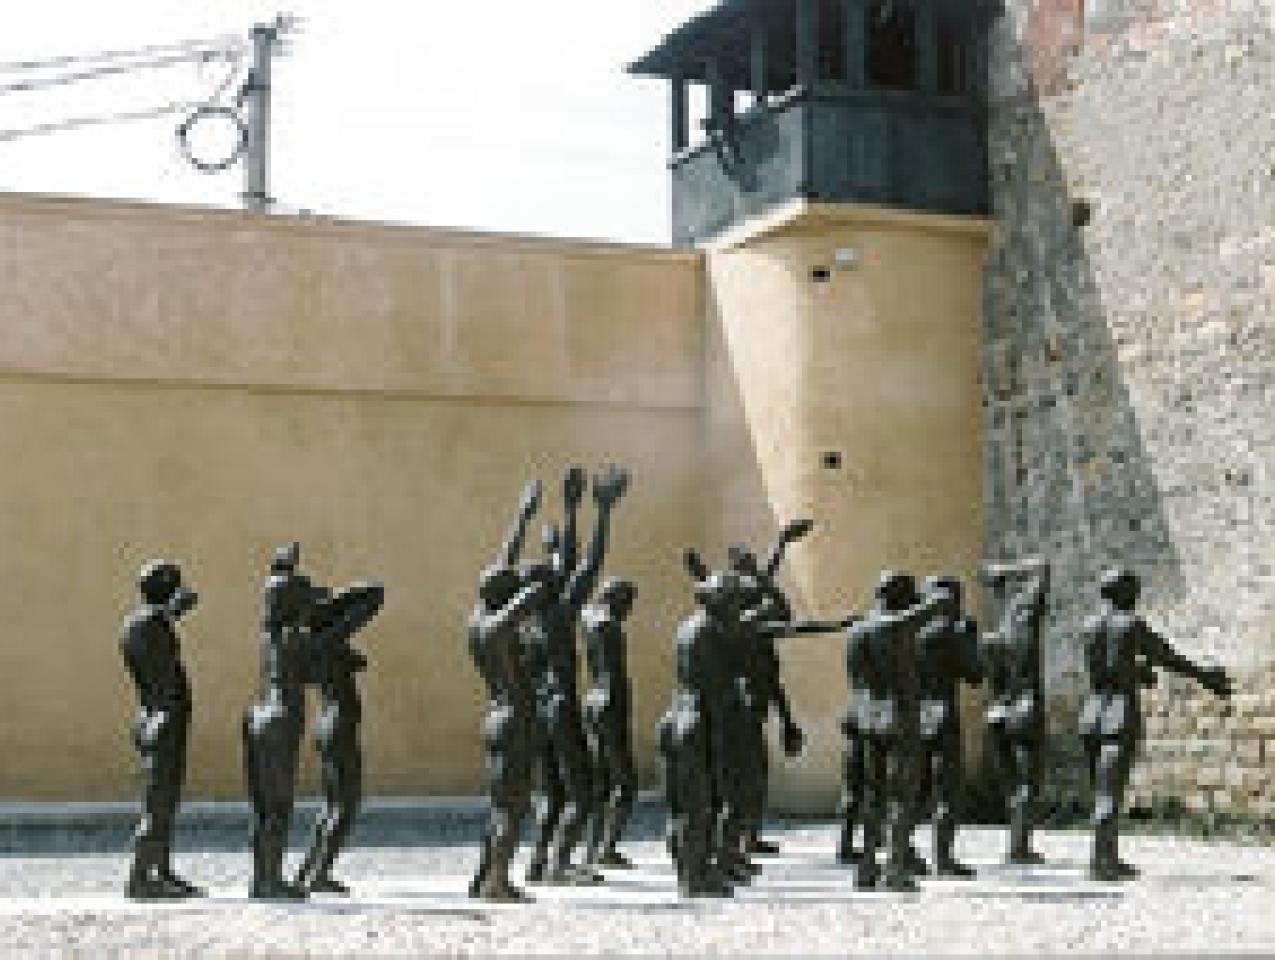 Courtyard of Former Communist Prison of Sighet